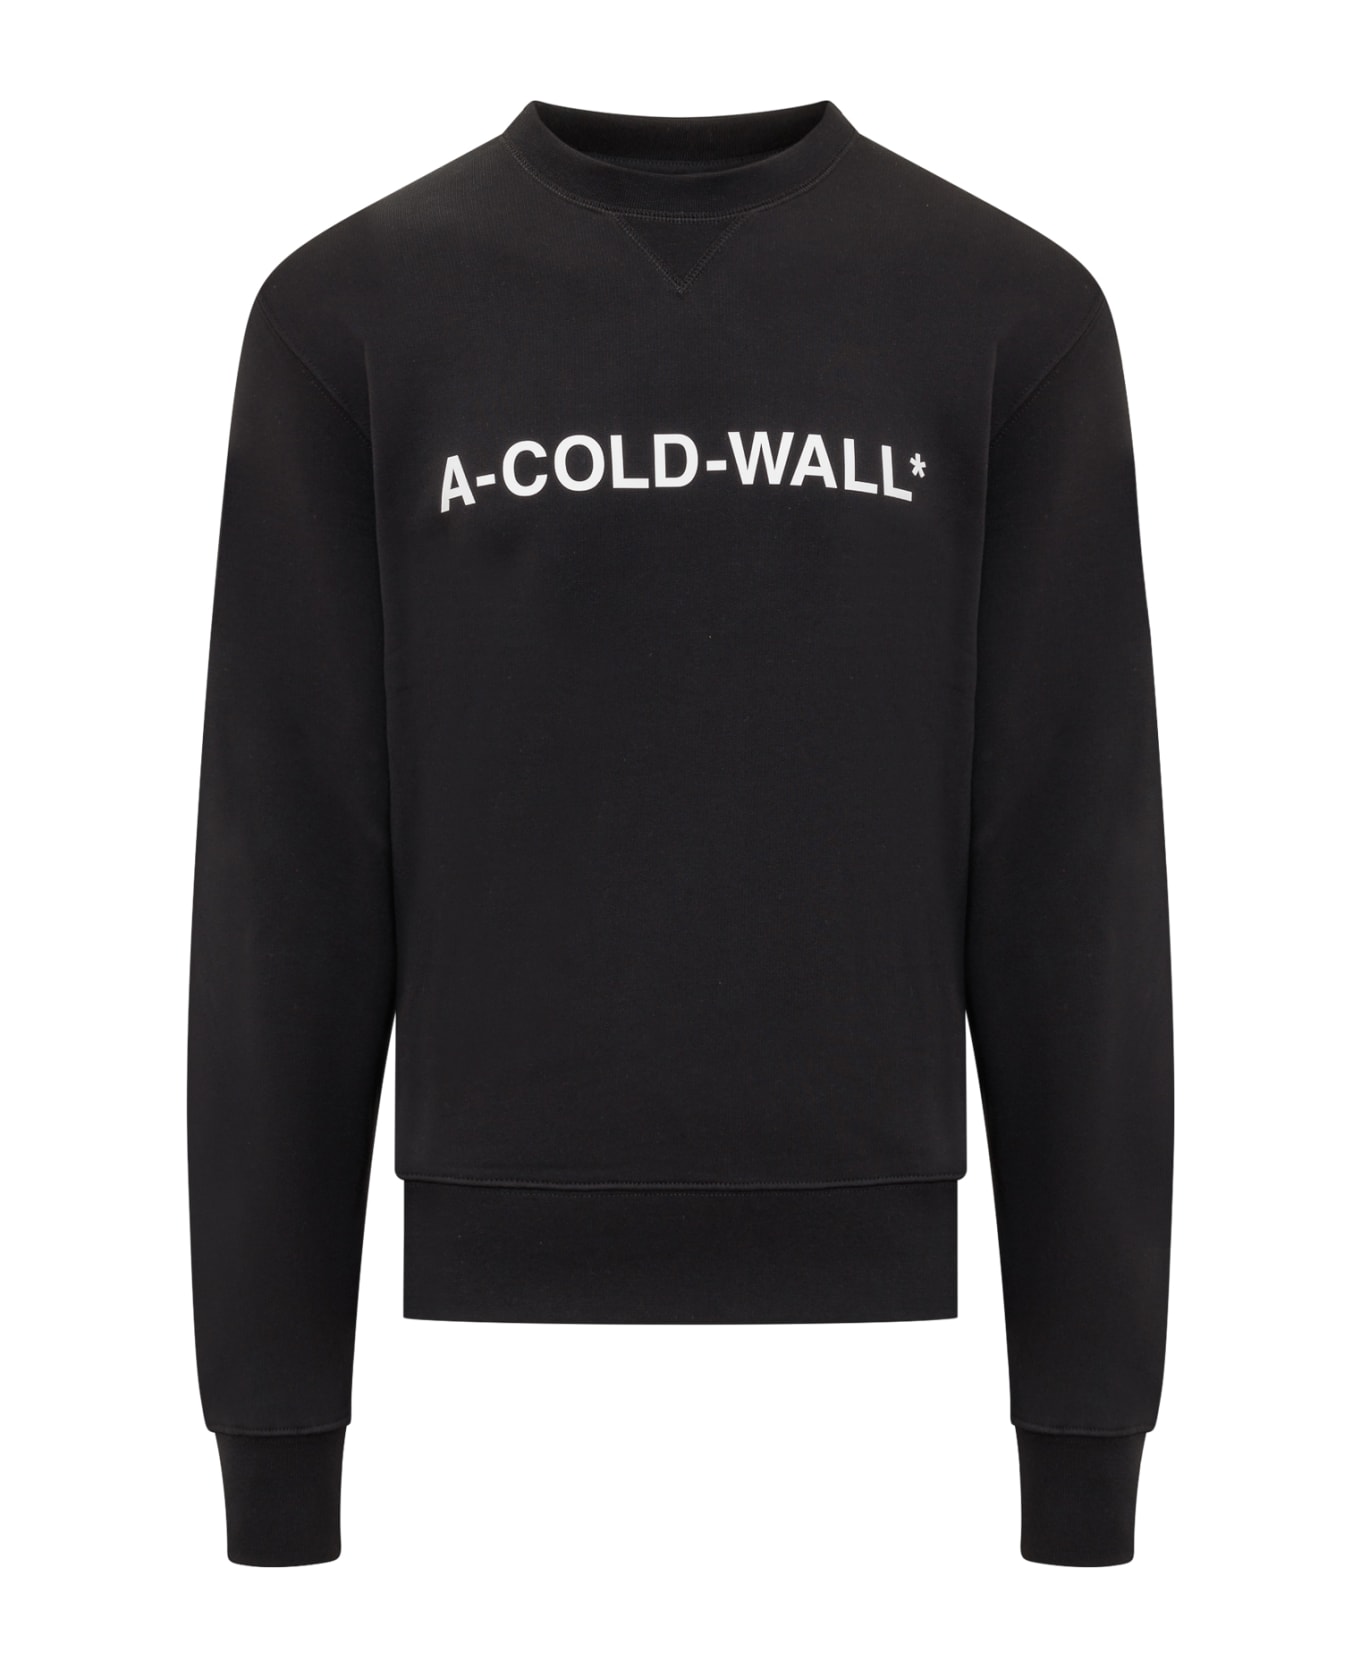 A-COLD-WALL Essential Sweatshirt - BLACK フリース